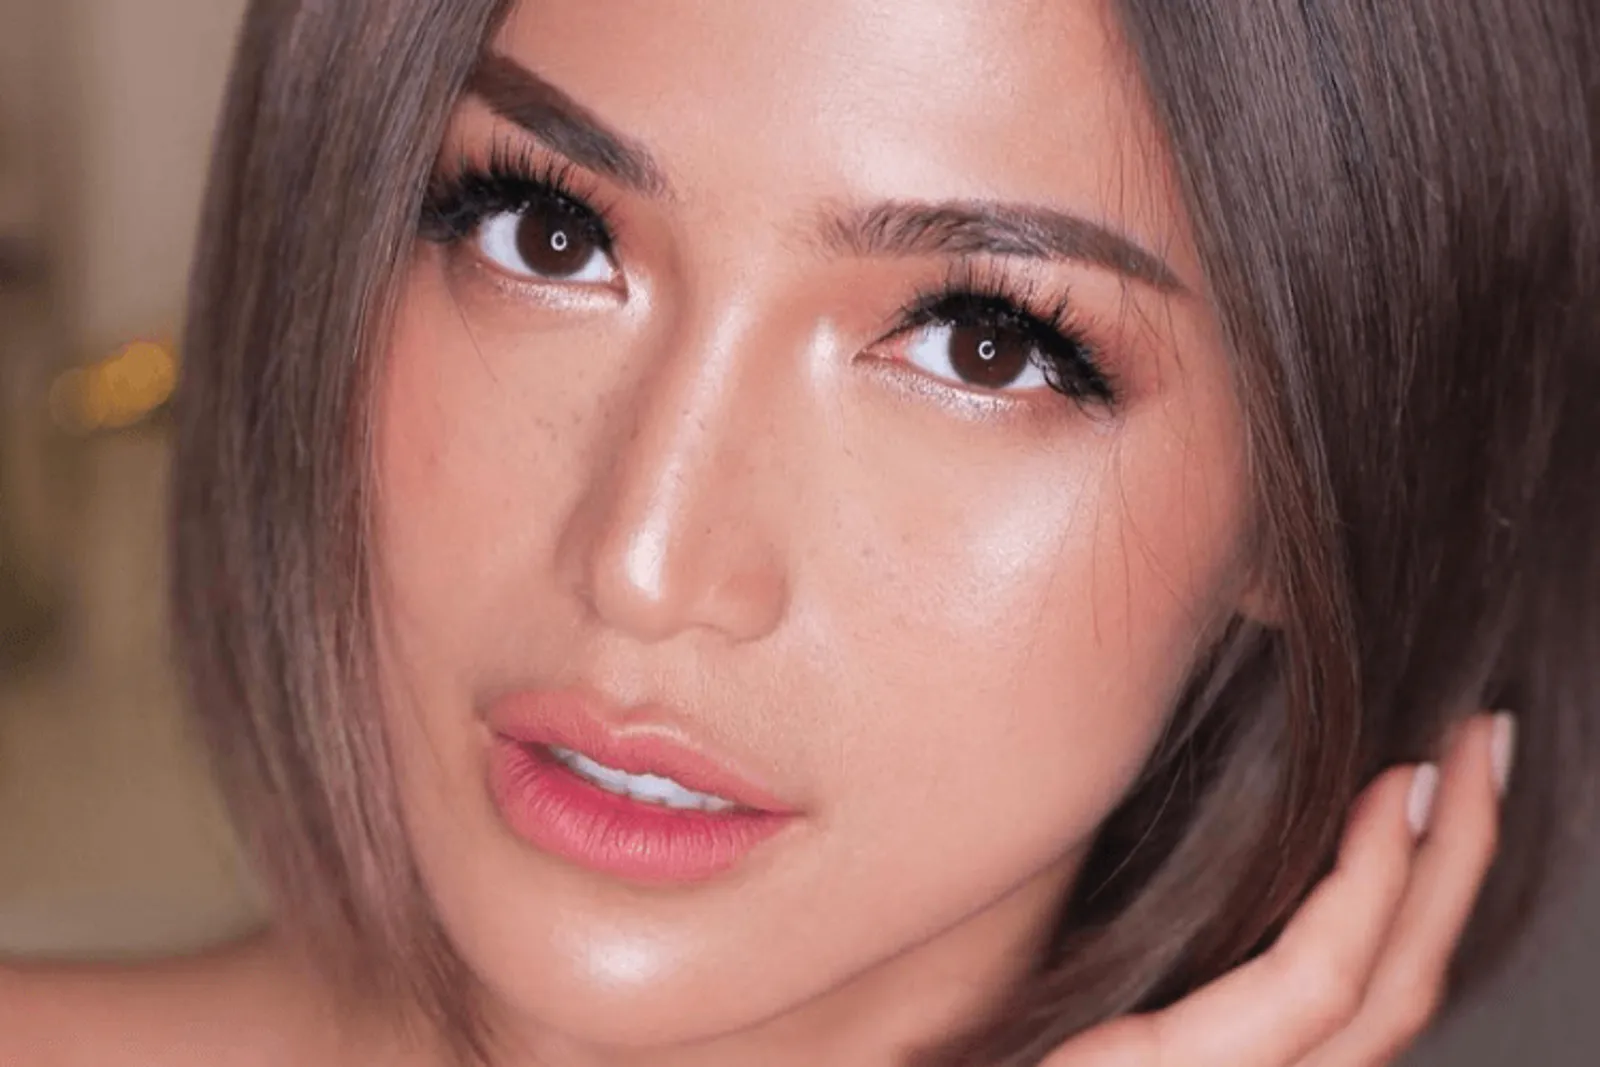 Mulai dari Natural Hingga Glamor, Ini 7 Gaya Makeup Jessica Iskandar